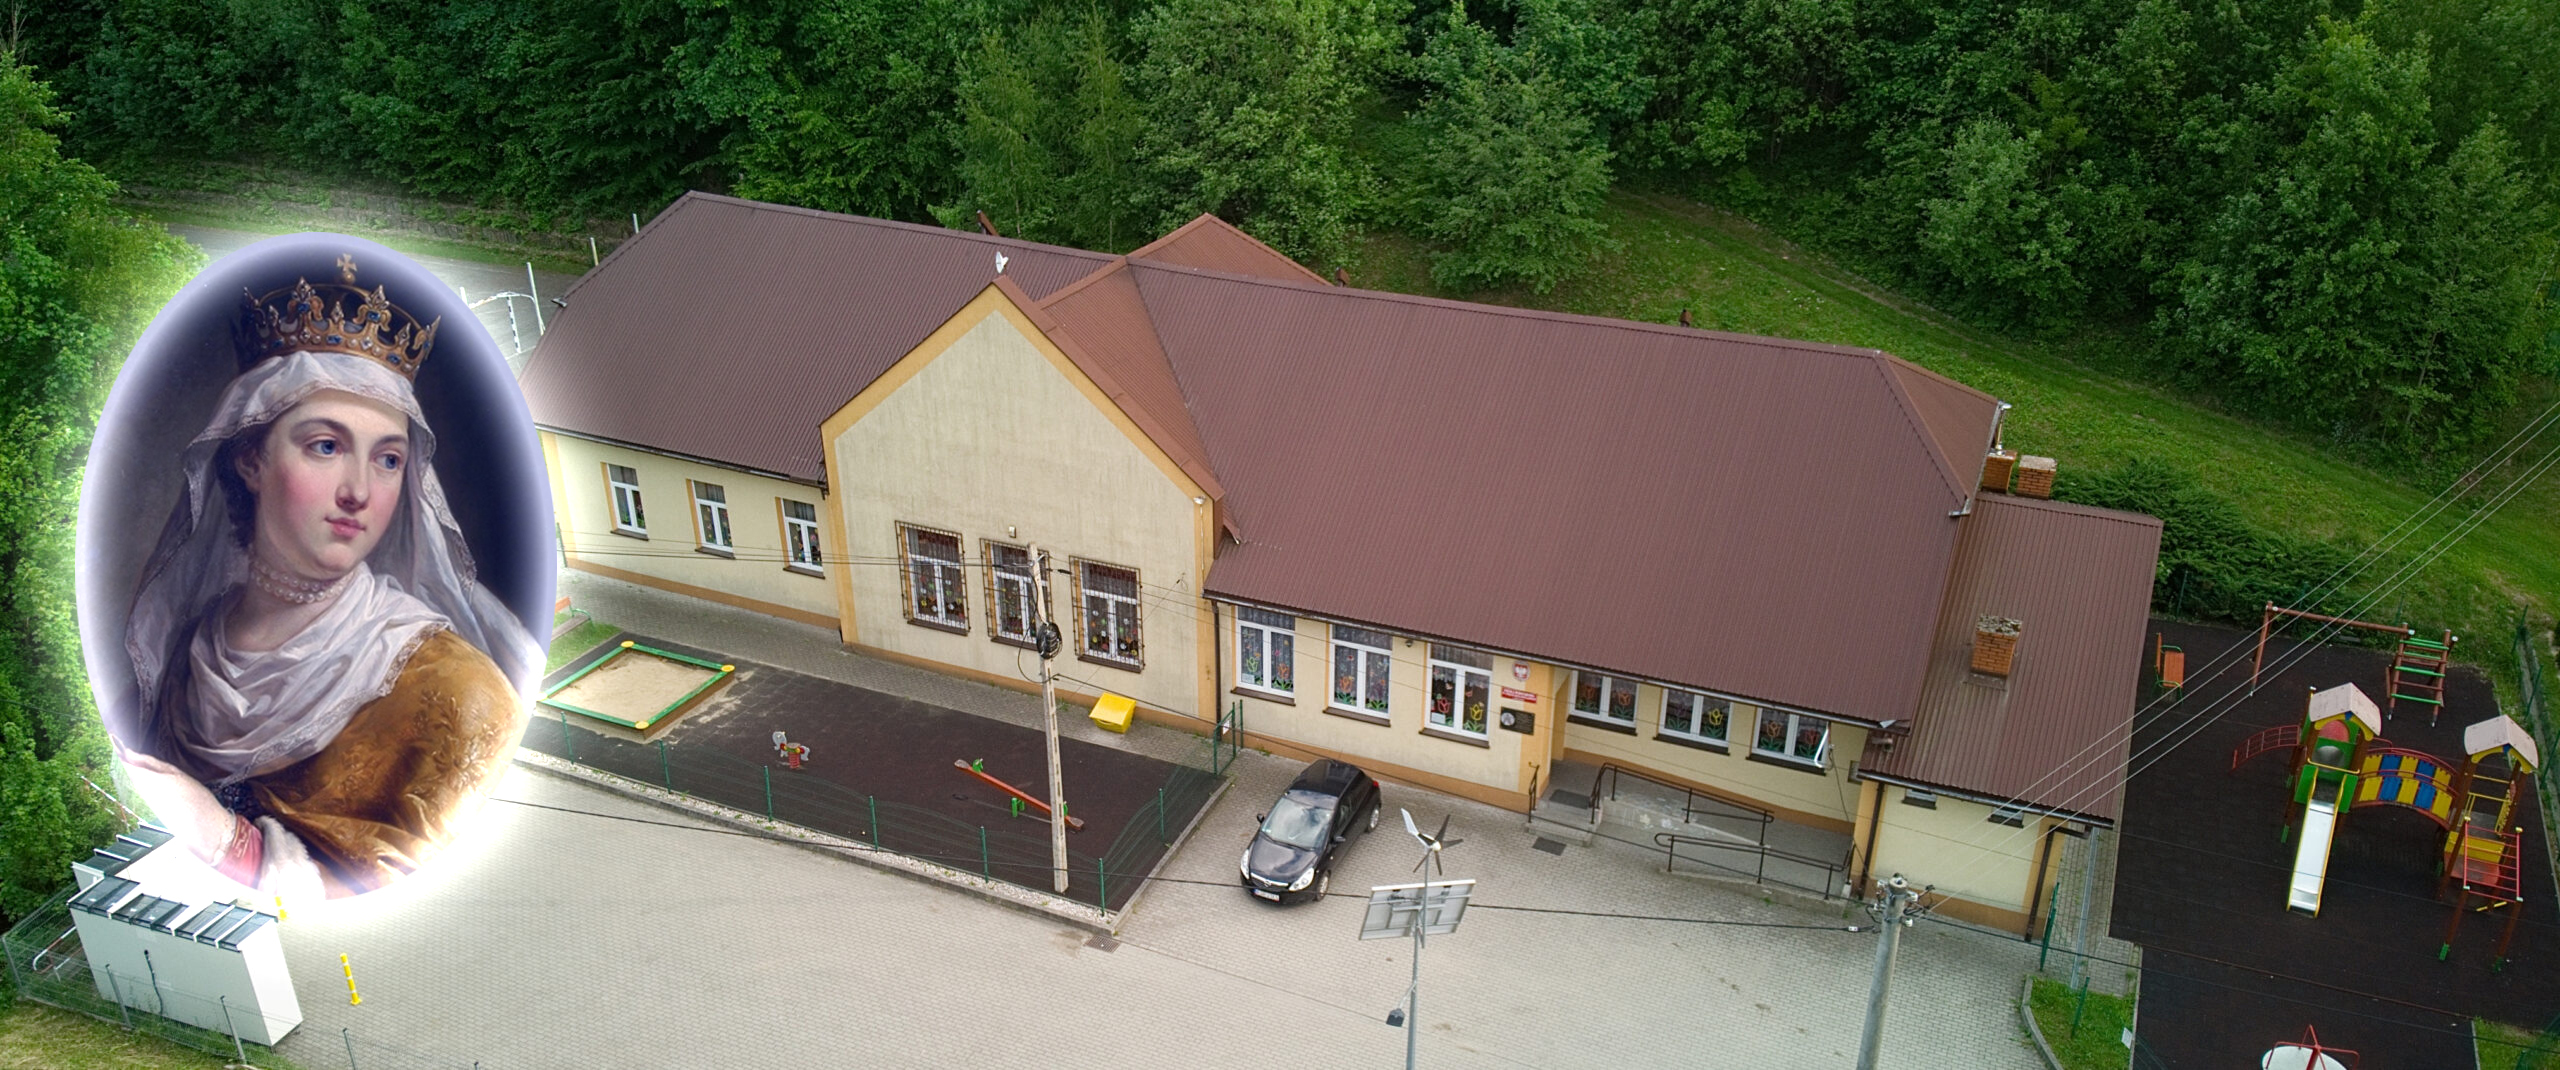 Obraz przedstawiający budynek szkoły